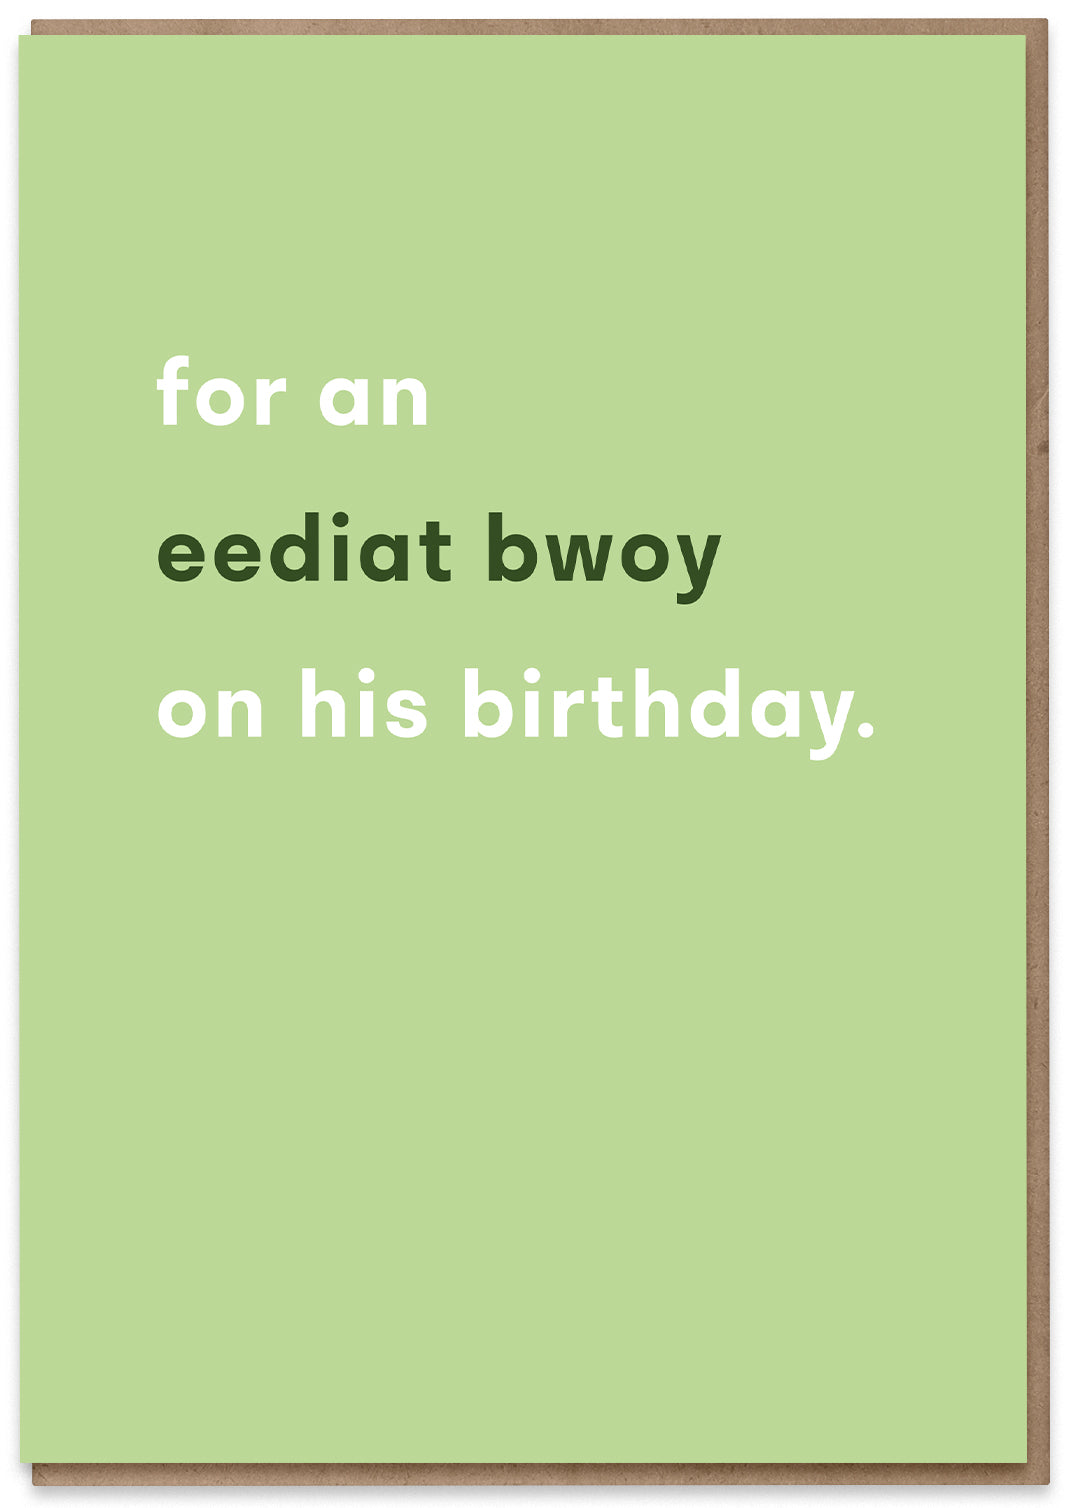 Eediat Bwoy's Birthday